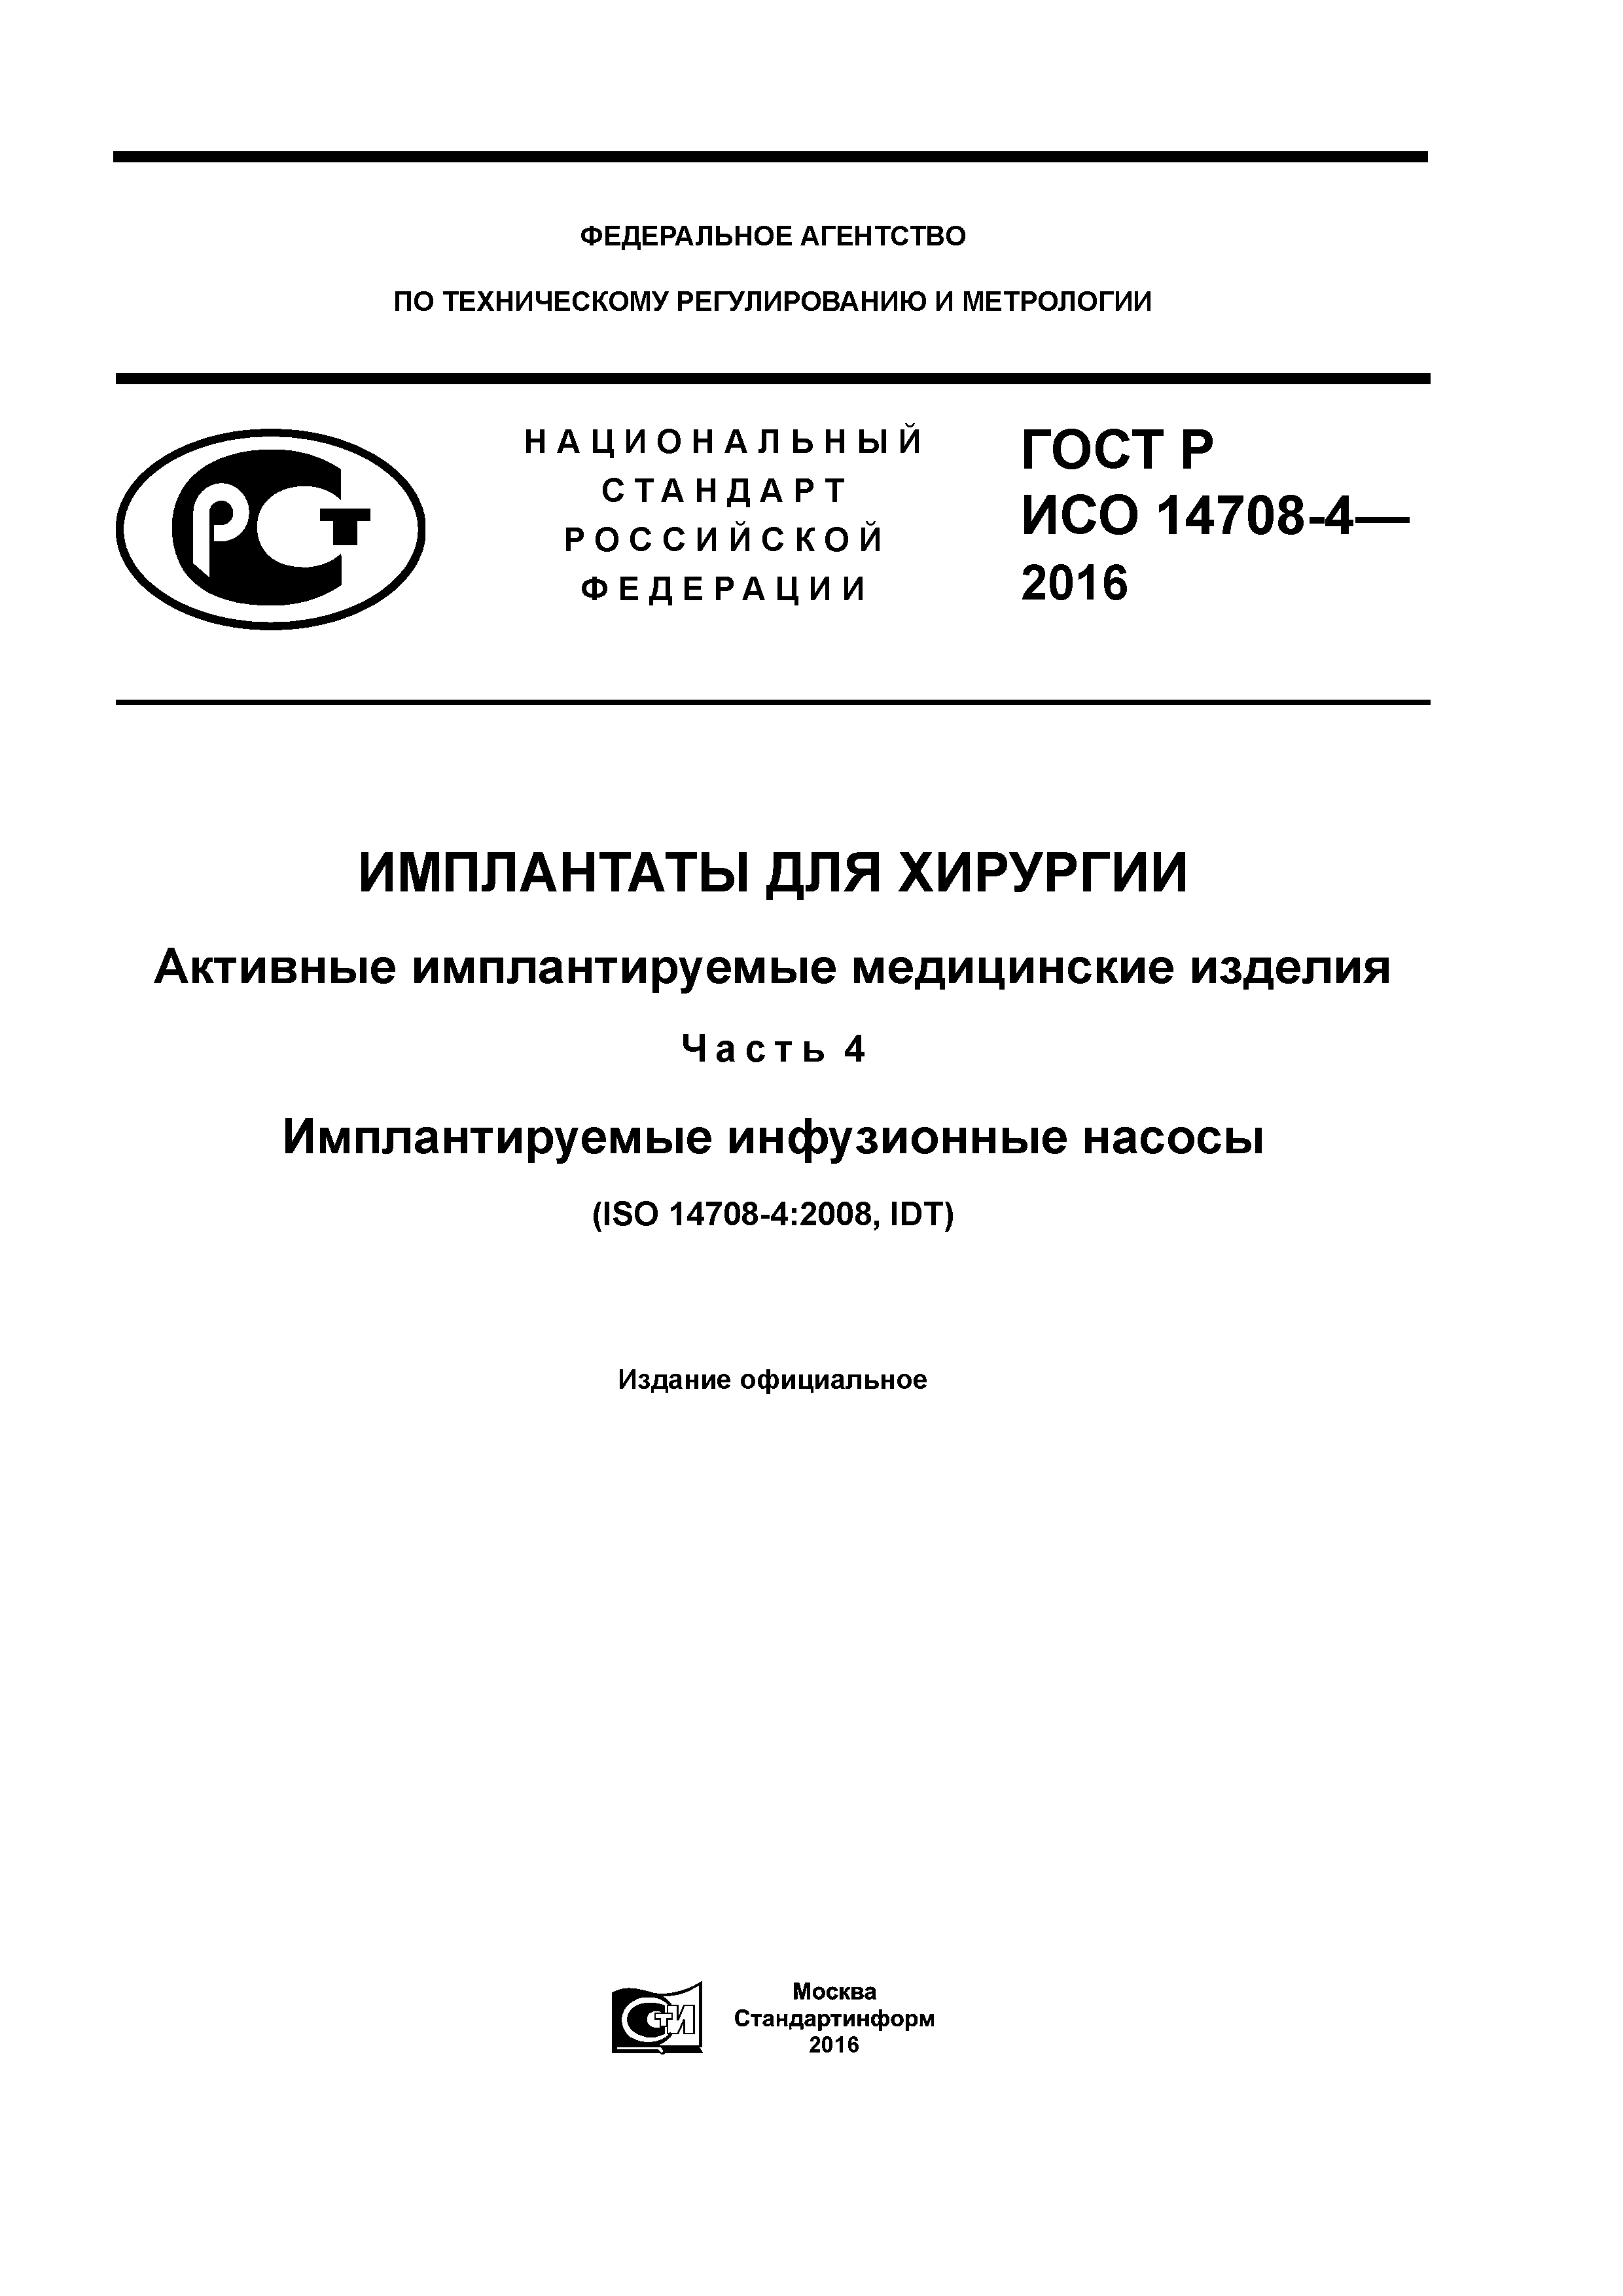 ГОСТ Р ИСО 14708-4-2016